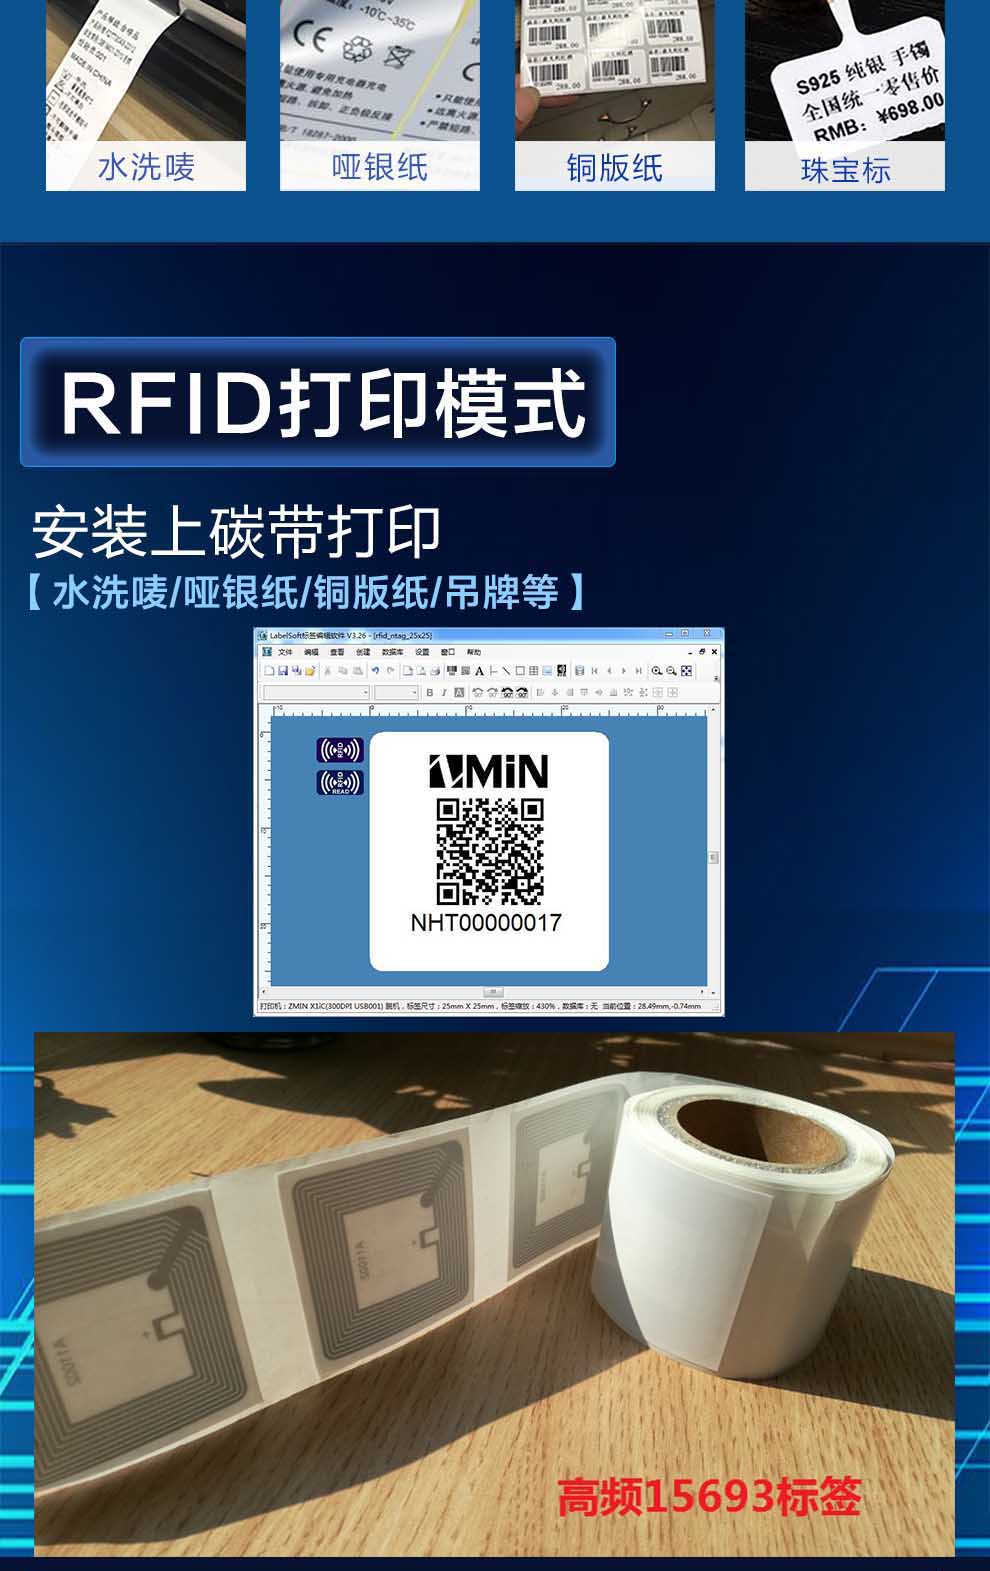 RFID高频标签打印机